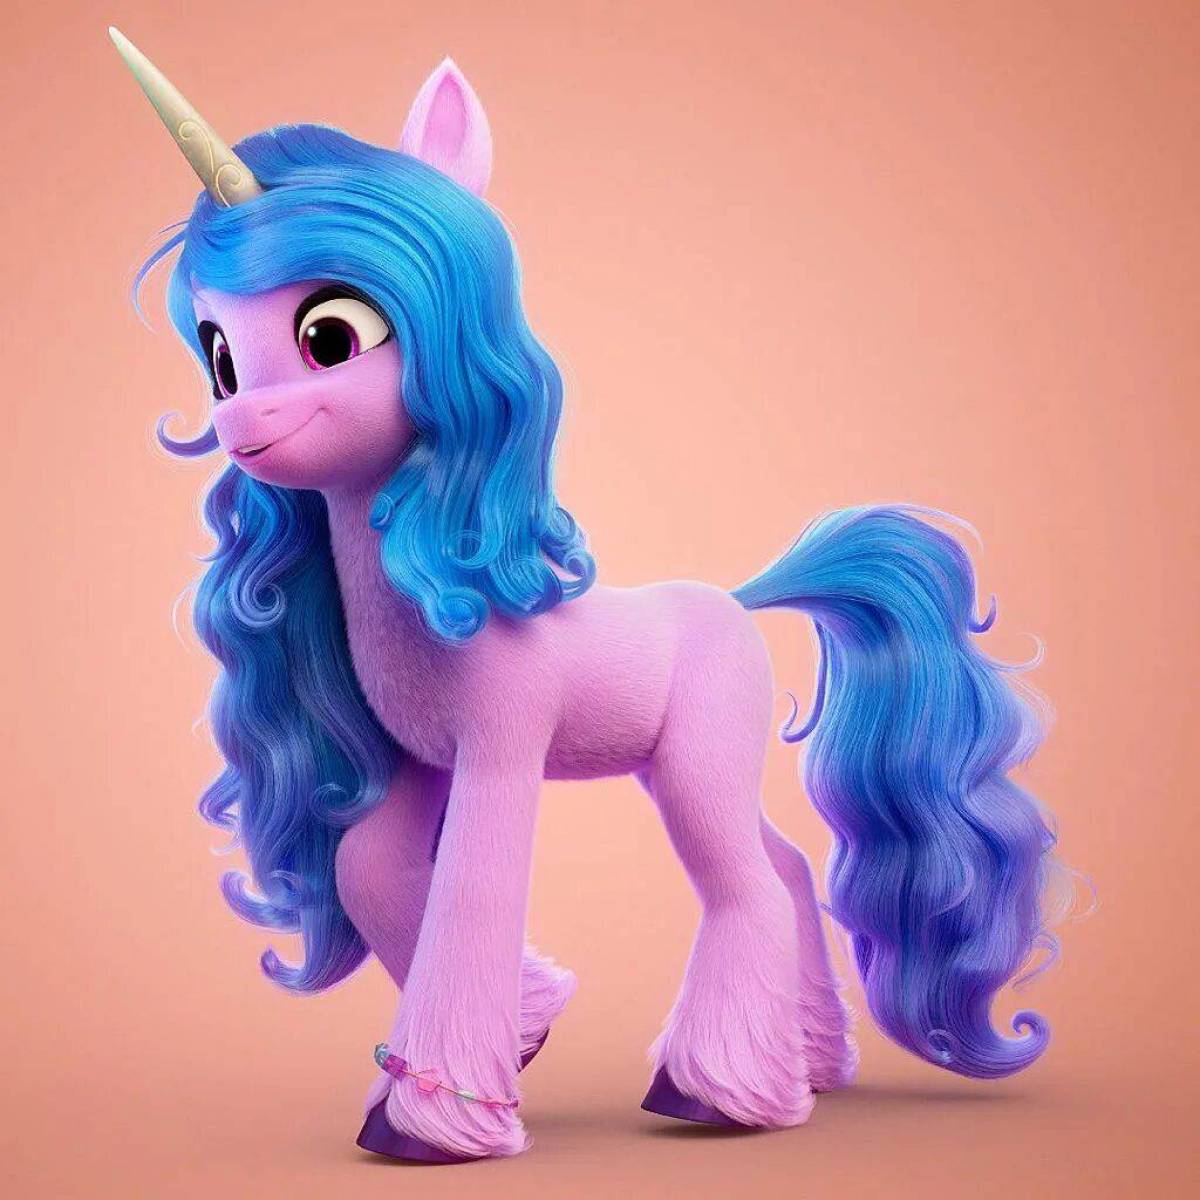 My little pony отзывы. My little Pony g5 Иззи фигурка. МЛП 5 поколение. Izzy пони g5. My little Pony a New Generation Izzy Moonbow.